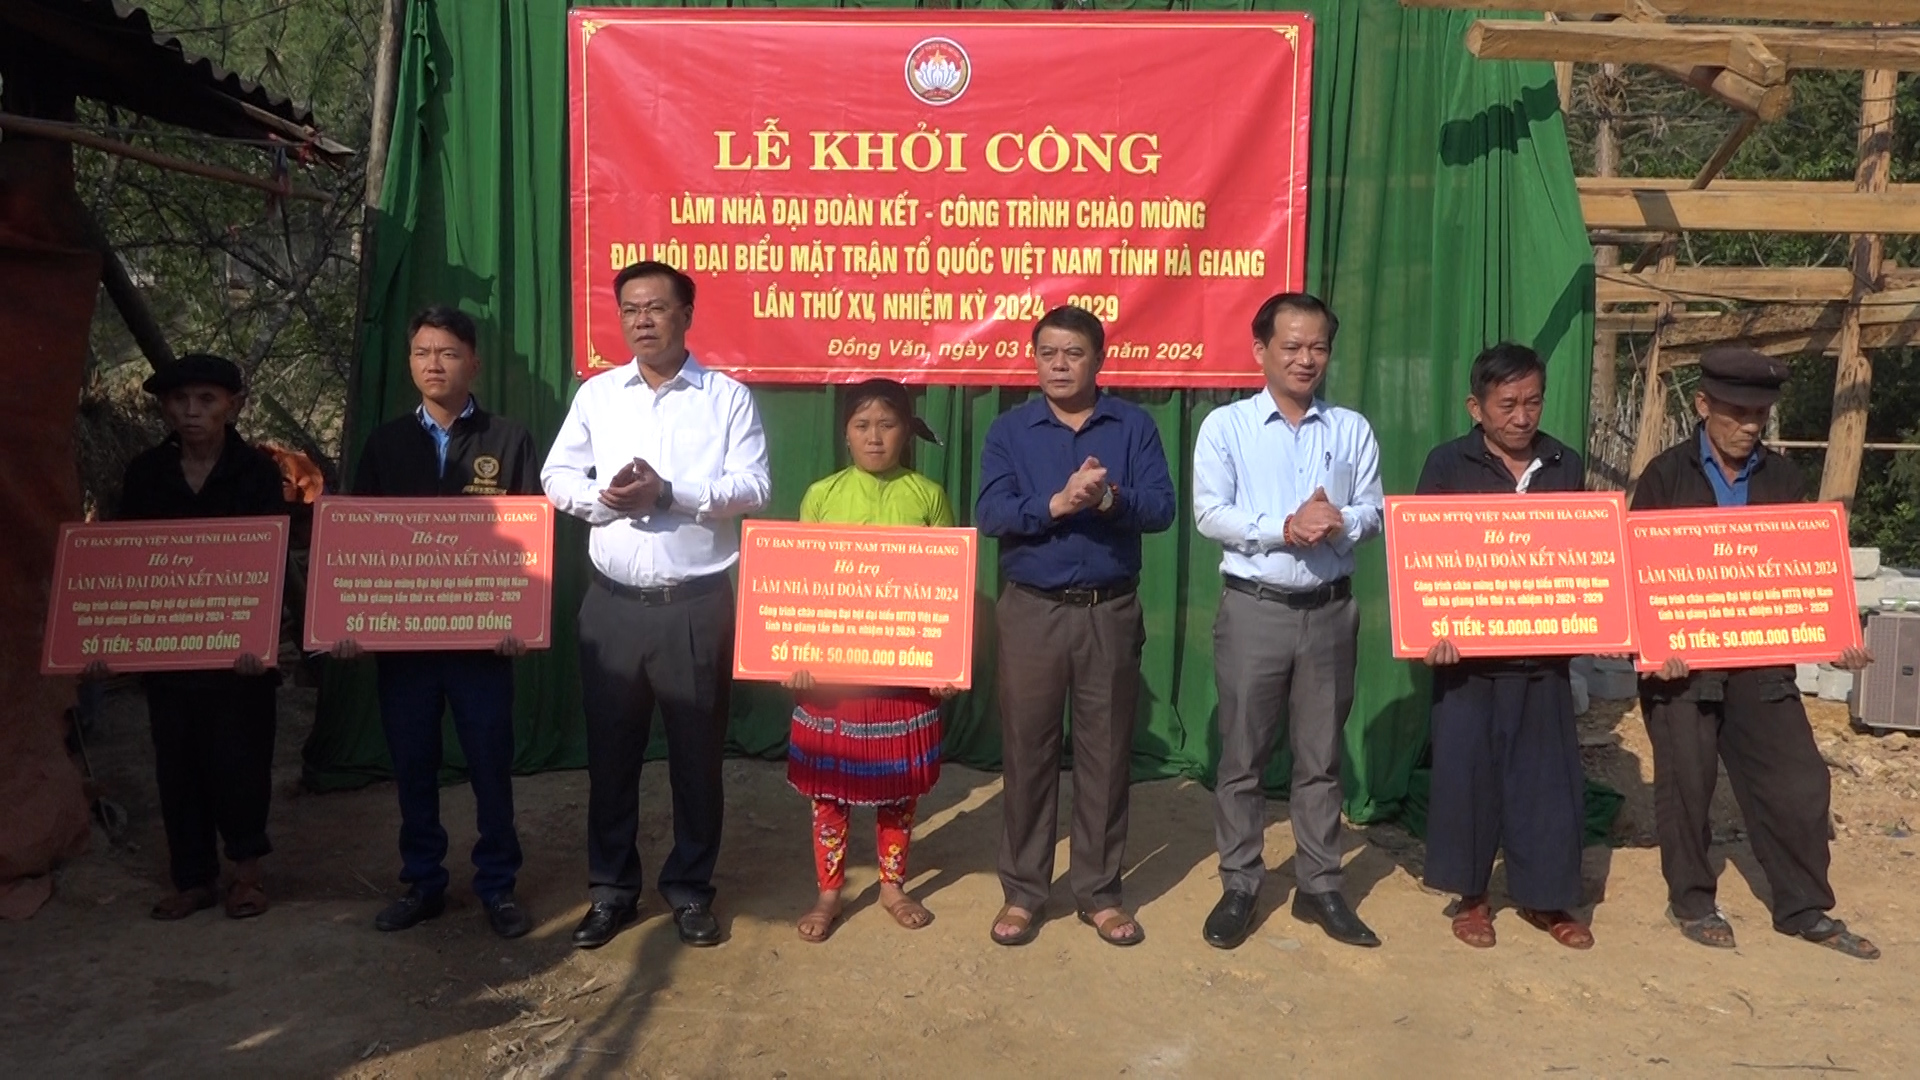 Lễ khởi công xây dựng nhà Đại đoàn kết – Công trình chào mừng Đại hội đại biểu MTTQ tỉnh Hà Giang